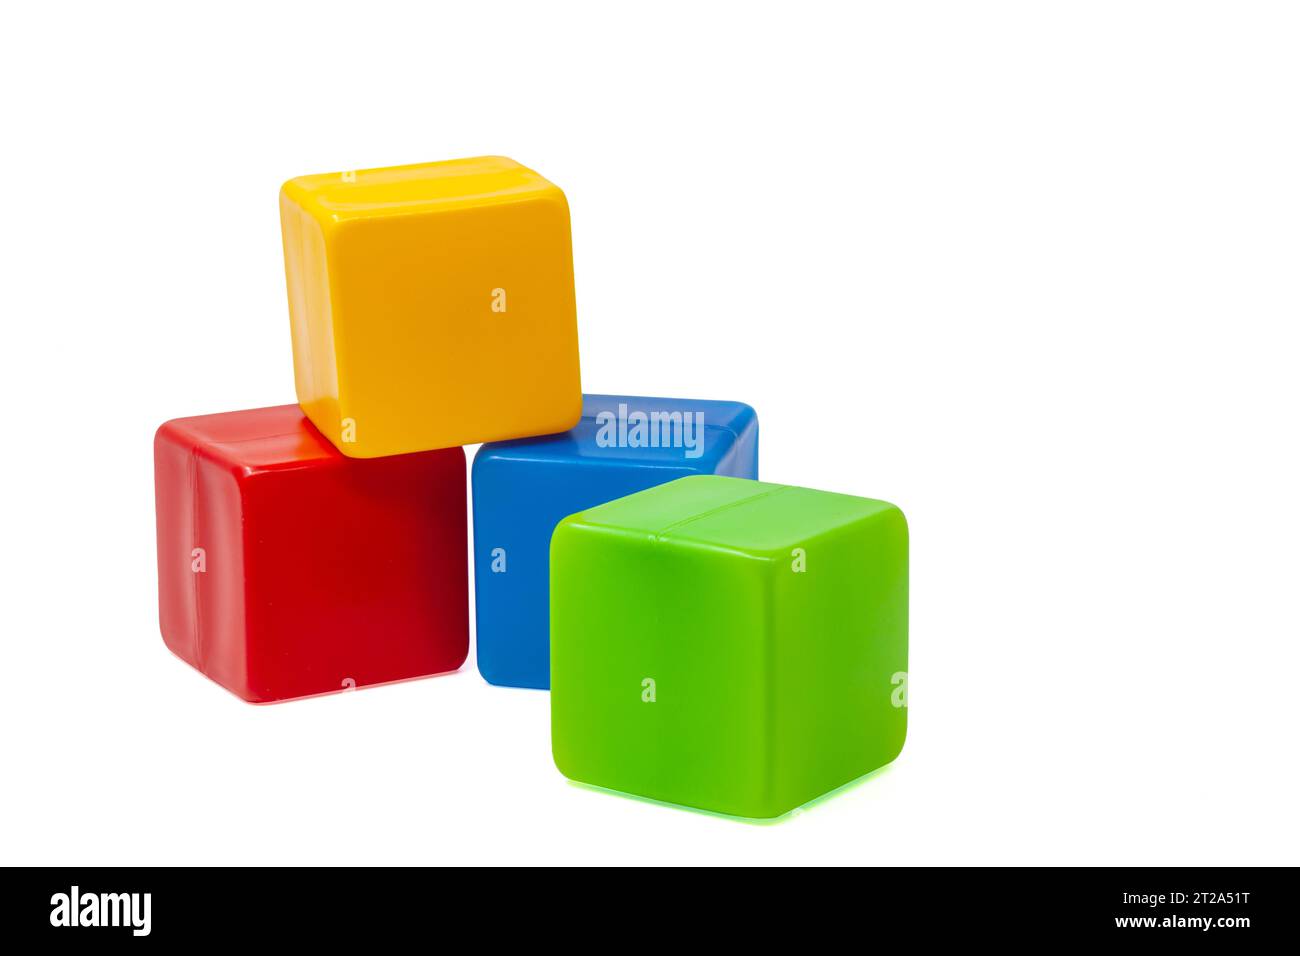 Mehrfarbige Plastikwürfel für Kinderspiele. Der gelbe Würfel steht oben auf dem roten und blauen Würfel, der grüne Würfel daneben. Eins auf eins. Hohe Qualität Stockfoto